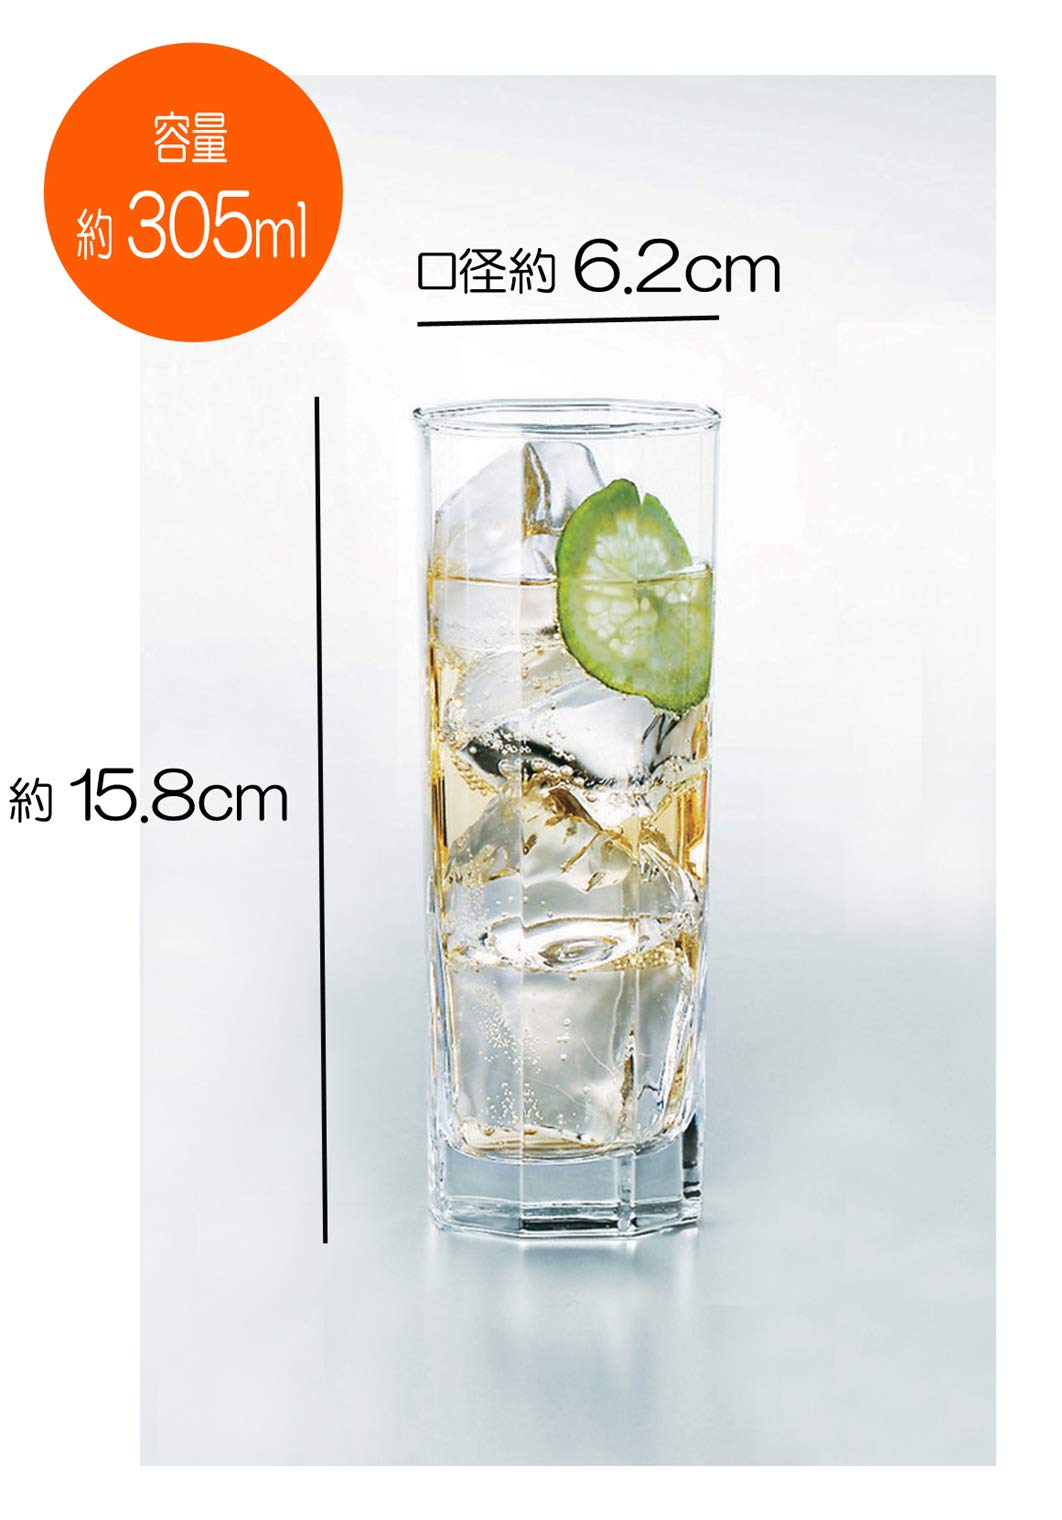 サントリーマーケティング Suntory Marketing 049-24 Zombie Glass, Clear, 10.1 fl oz (305 ml), Octagon, Made in Japan, Pack of 6